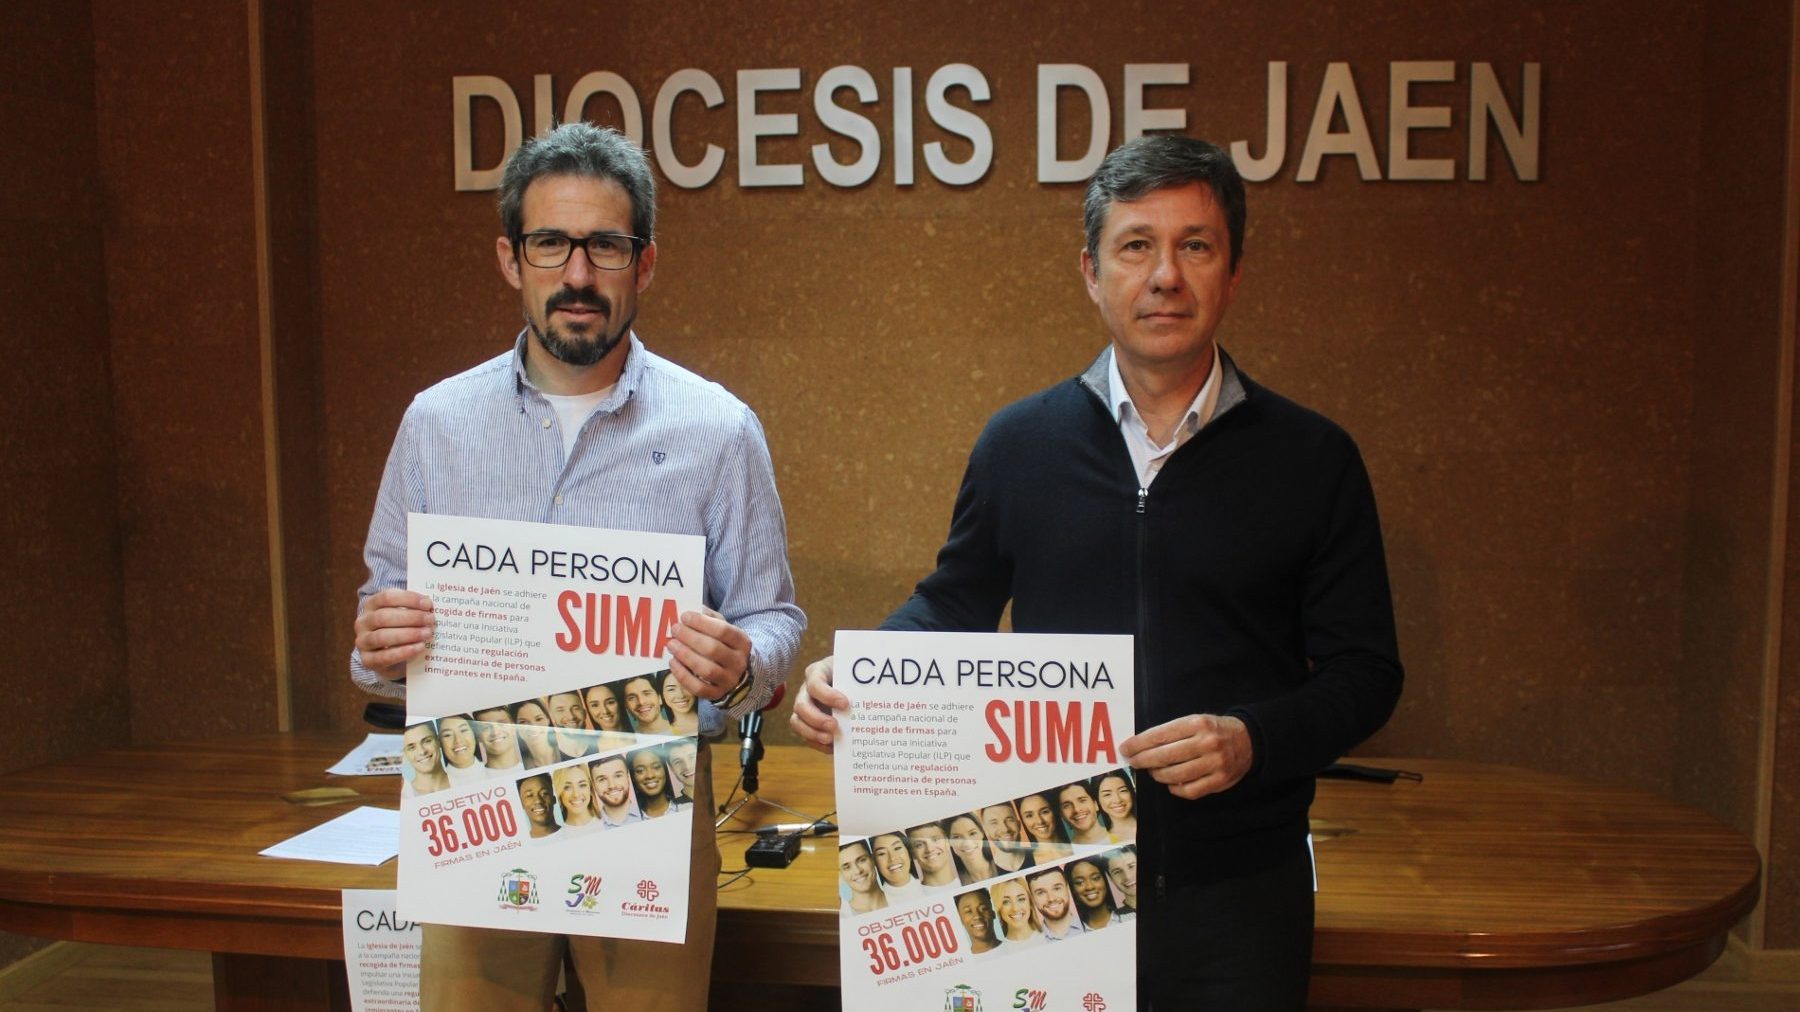 La Diócesis de Jaén recoge firmas para impulsar la regulación de medio millón de inmigrantes ilegales (CÁRITAS).